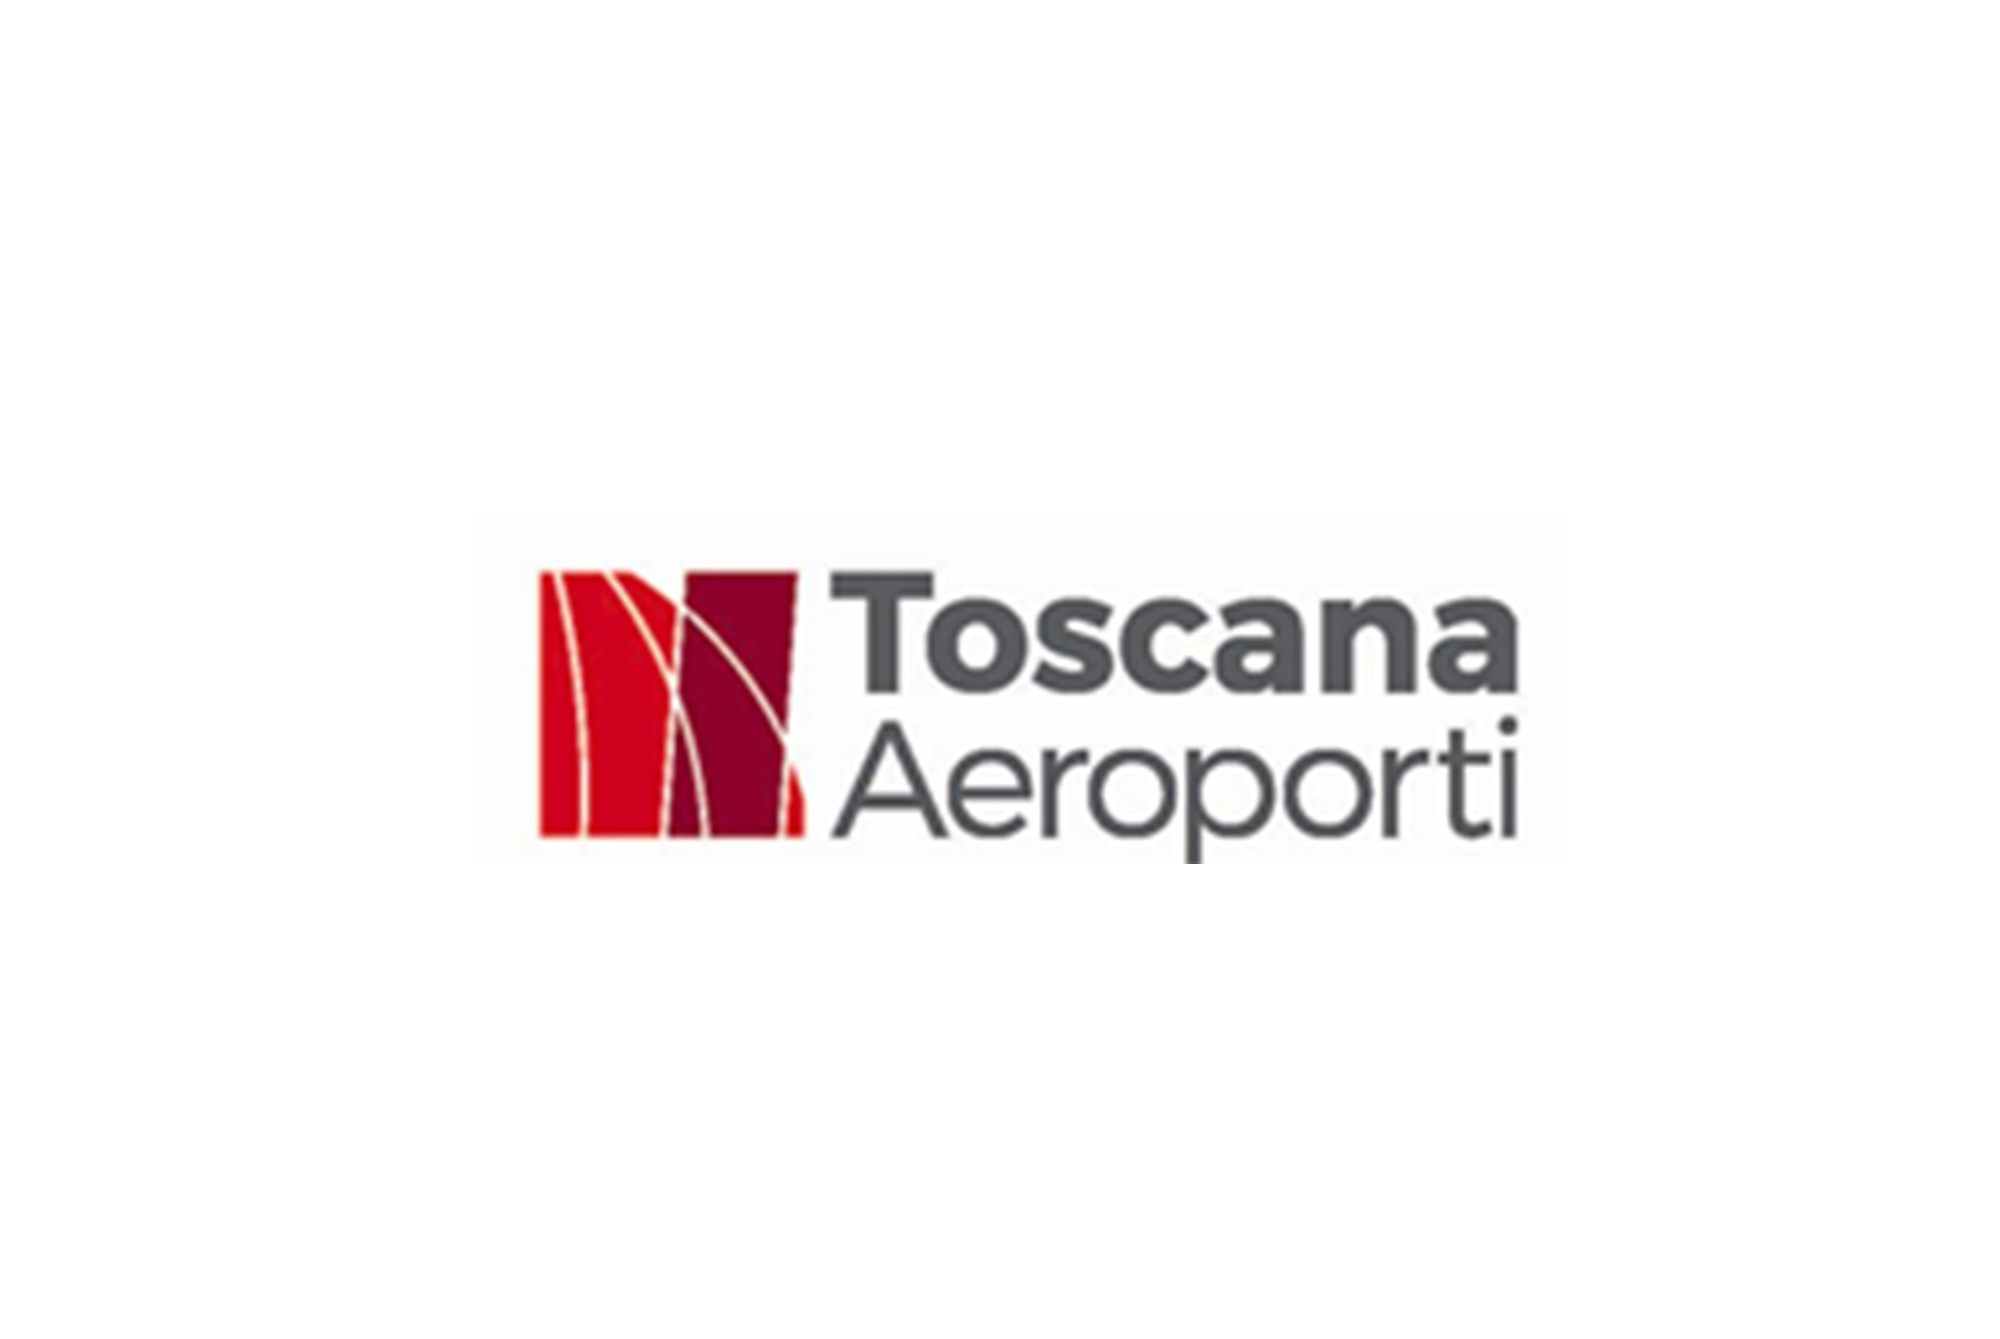 Toscana Aeroporti P4 Sosta Lunga (Paga online) - Parcheggio Aeroporto Pisa - picture 1